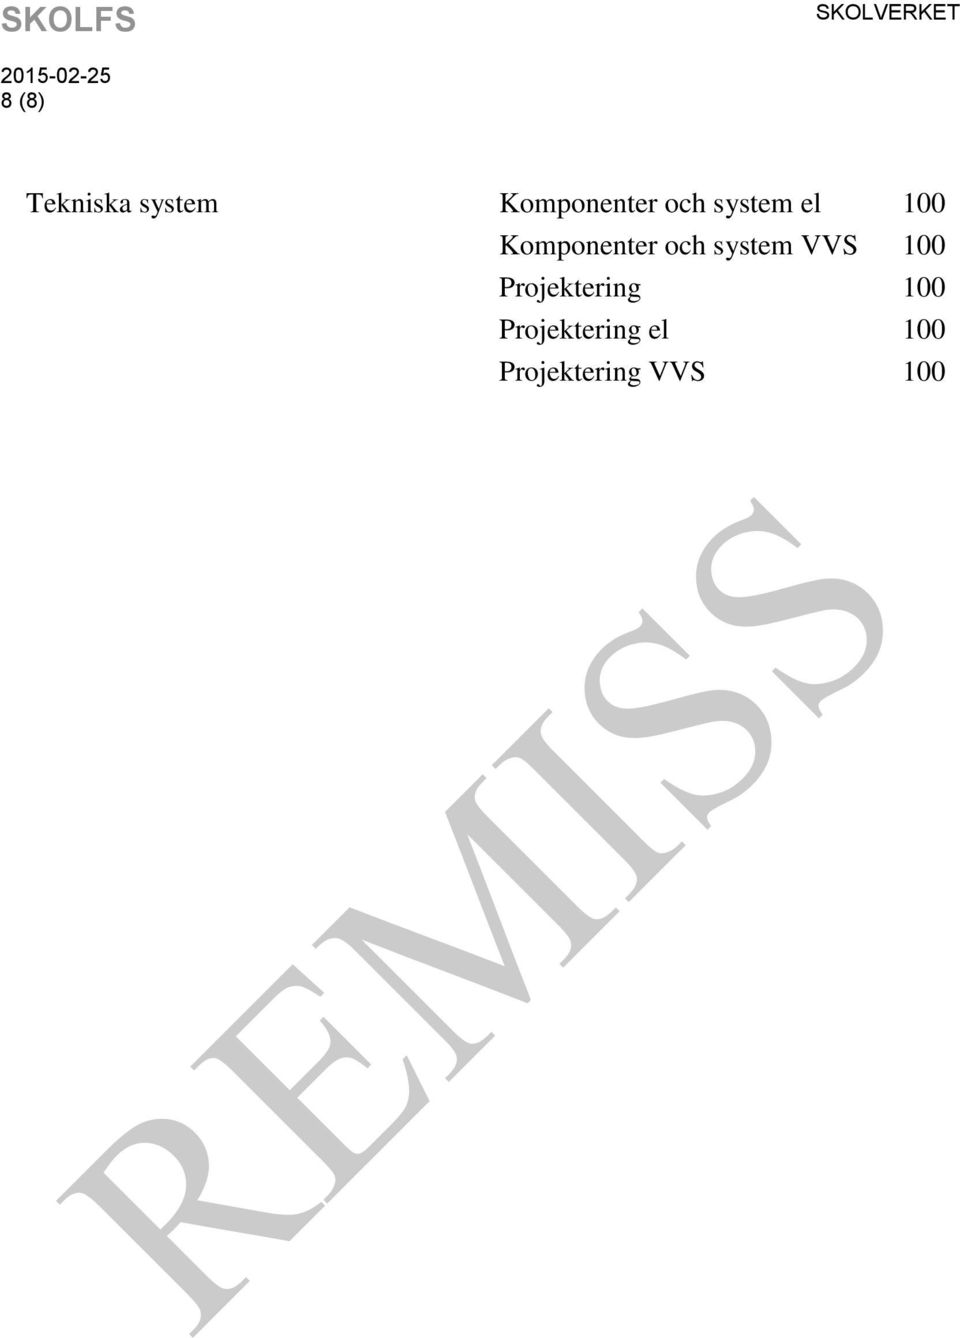 Komponenter och system VVS 100